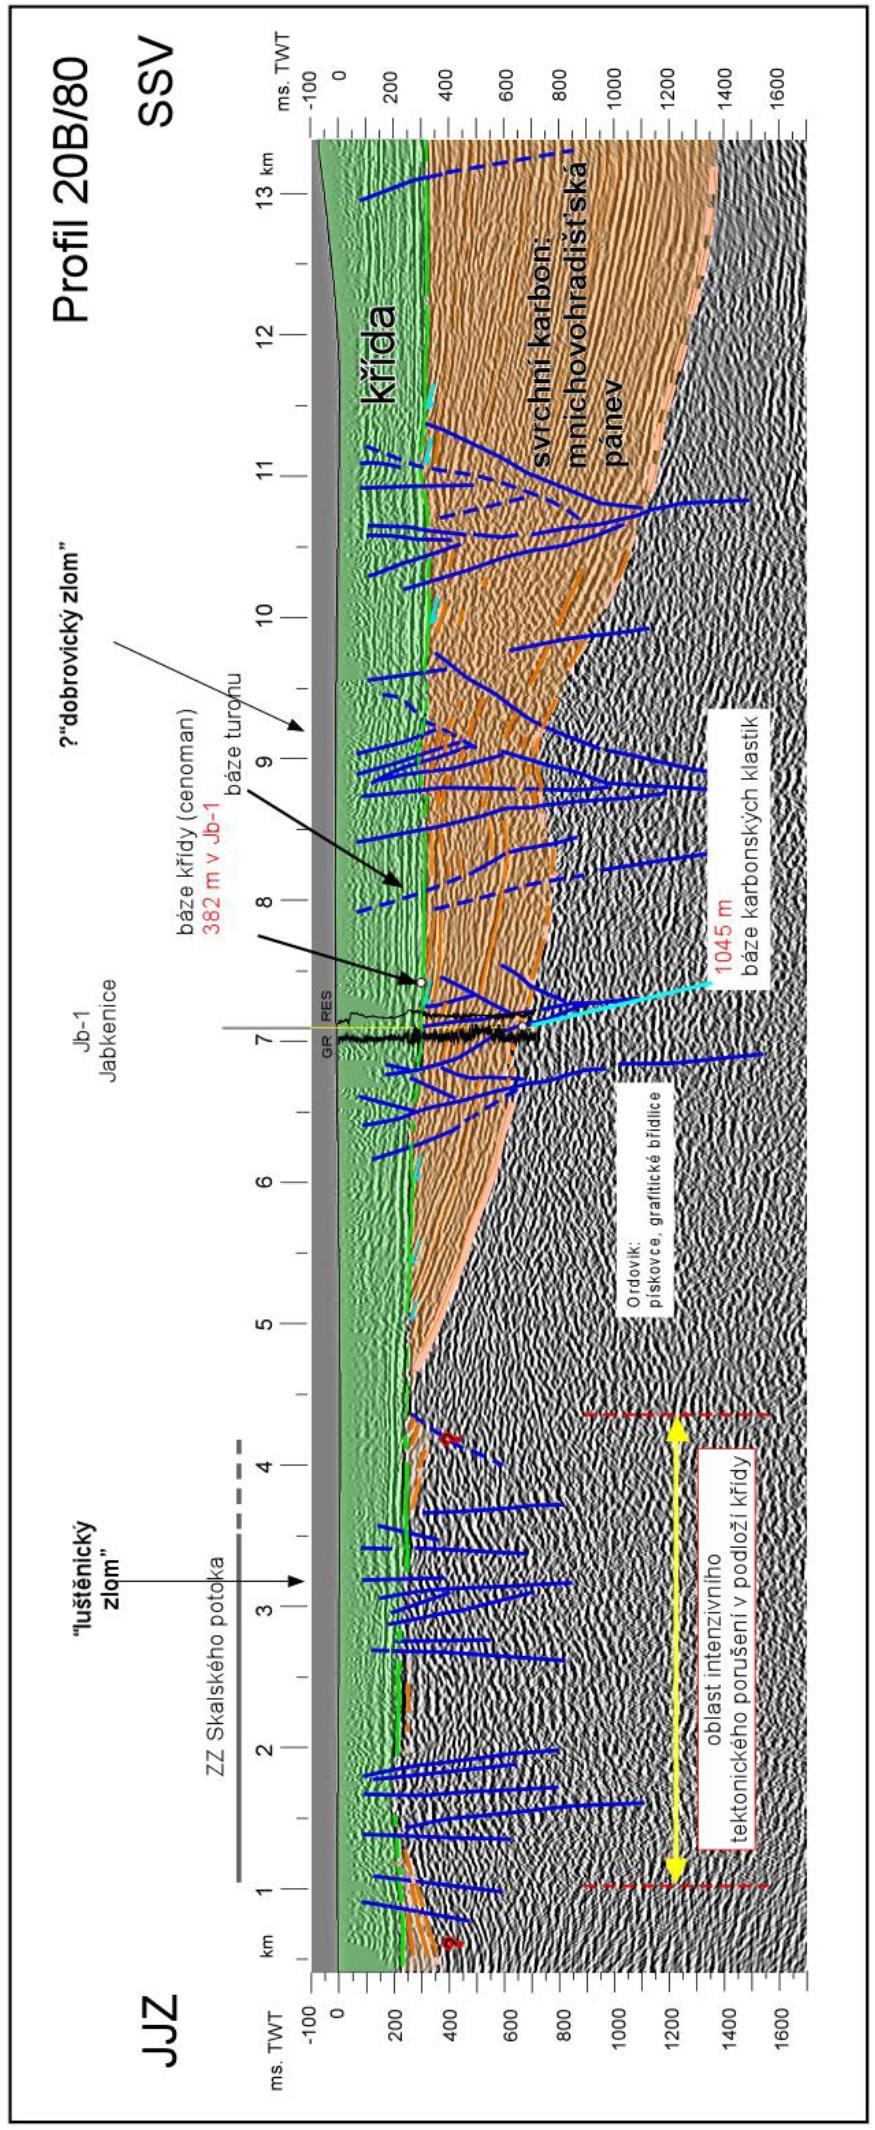 Obr. 4-14. Geologická interpretace seismického profilu 20B/80) časový řez po migraci, reprocessing původních dat Kadlečíka et al.